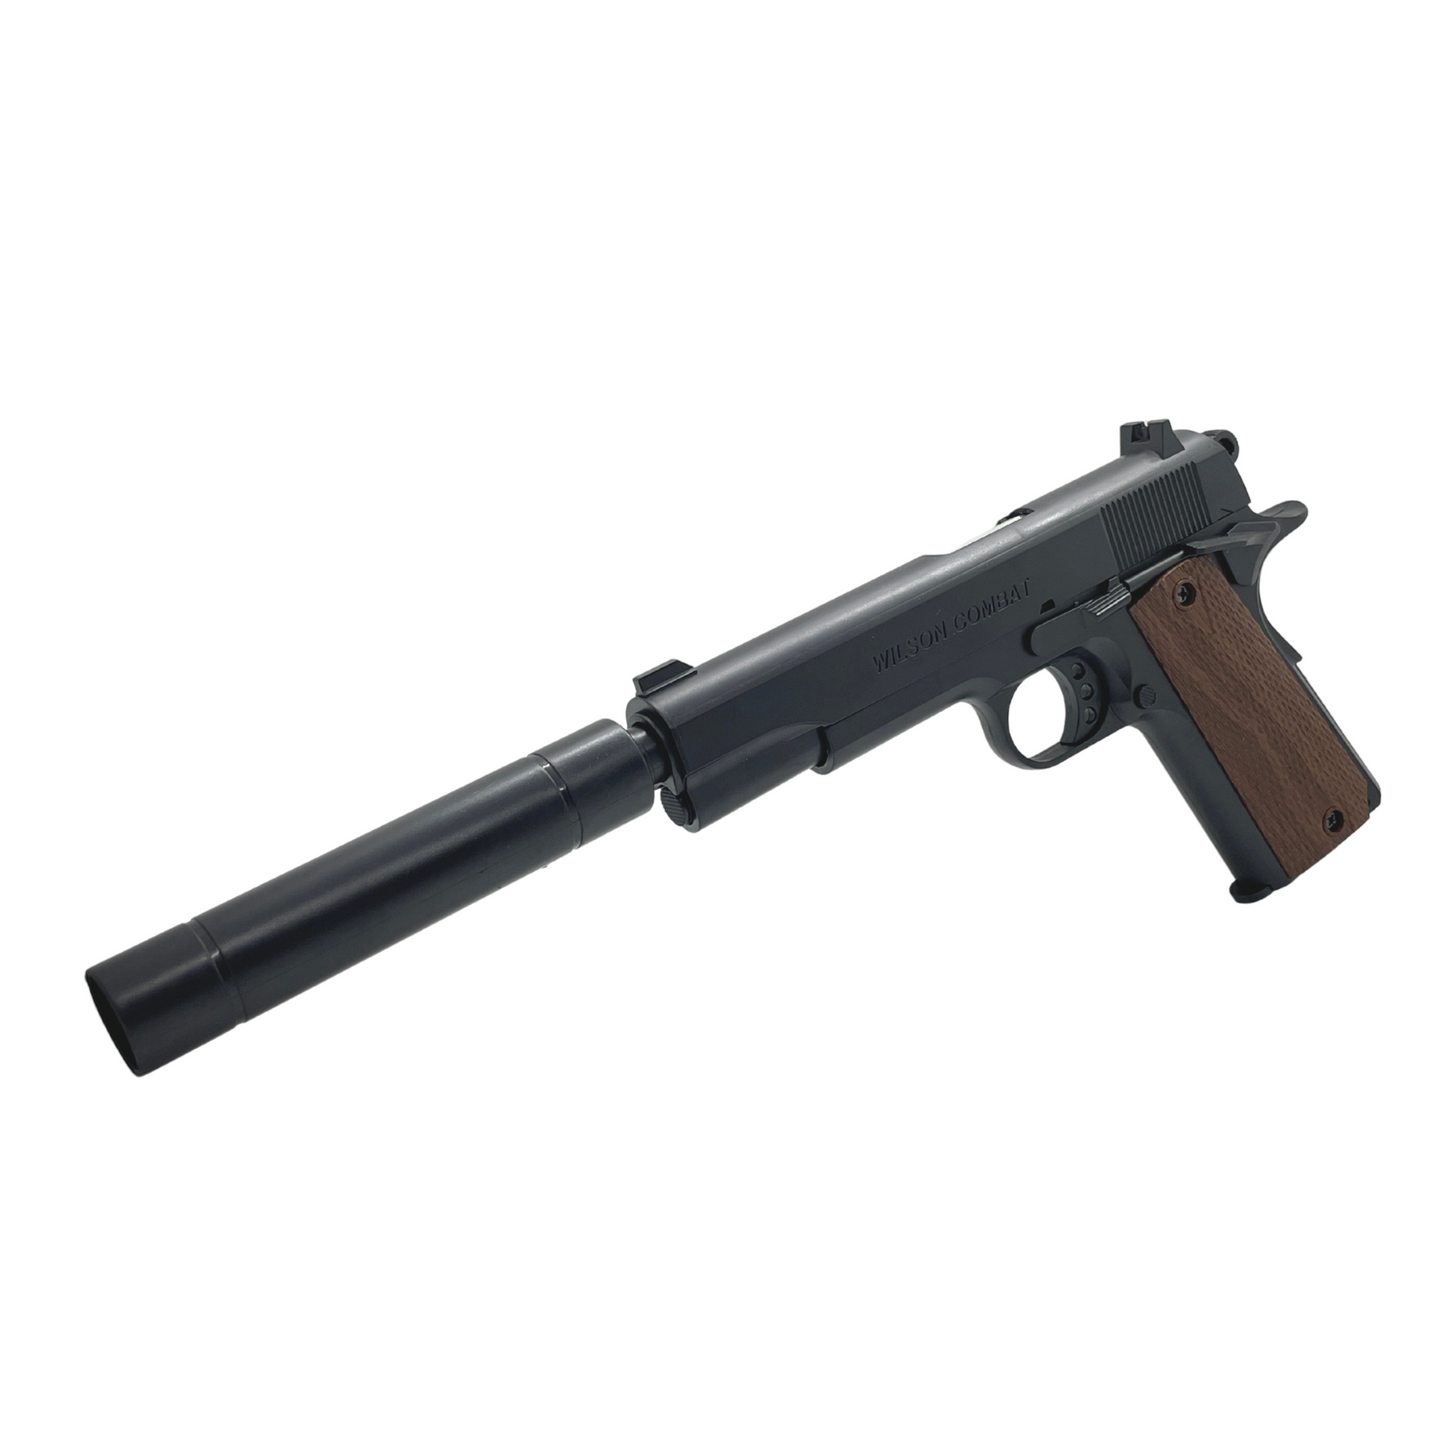 1911 Vietnam Manual Pistol - Gel Blaster